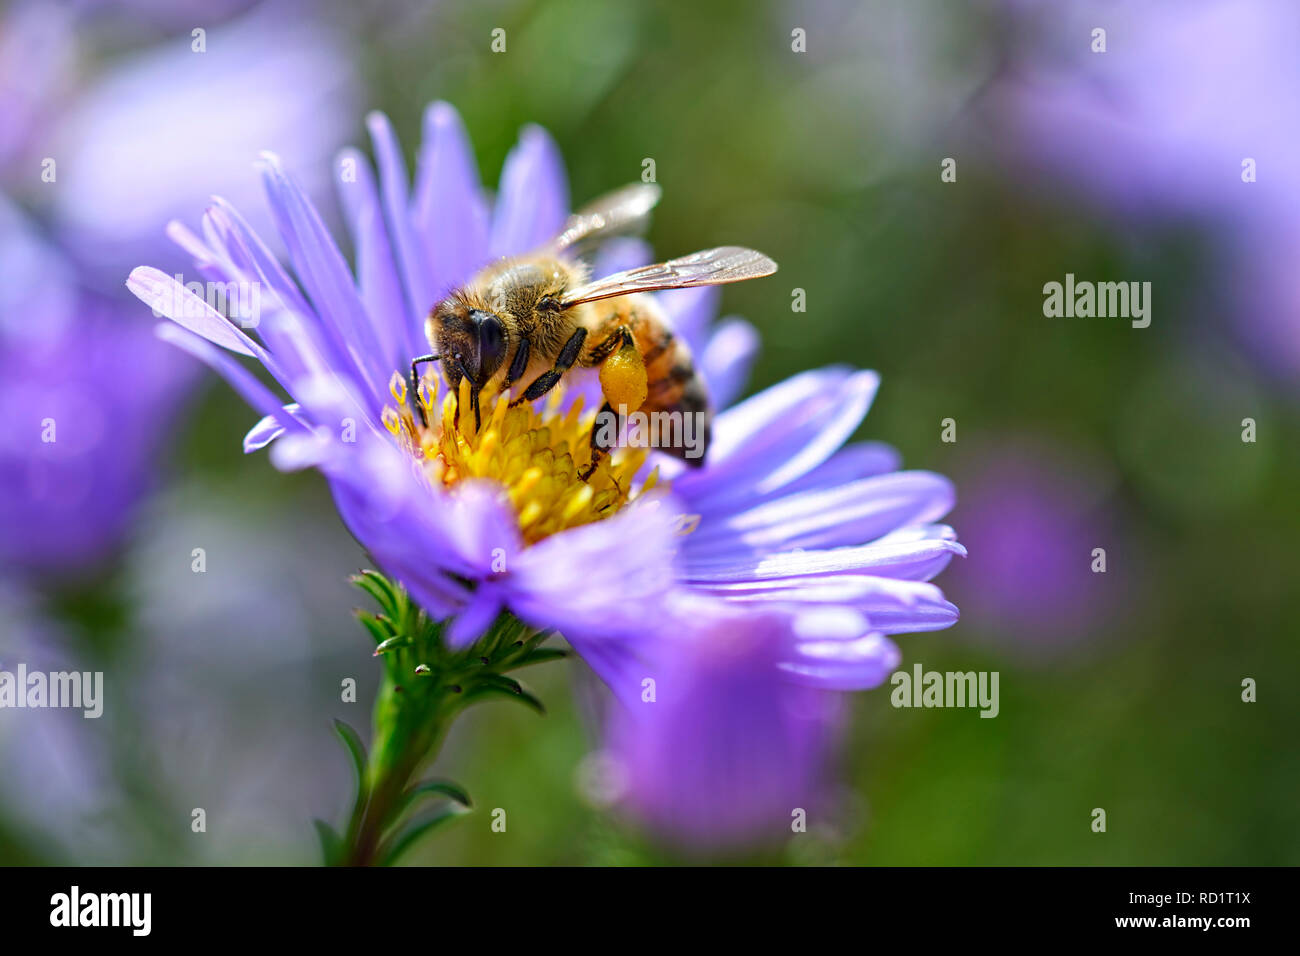 Honeybee (Apis mellifera) on a blossom, Honigbiene (Apis mellifera) auf einer Blüte Stock Photo